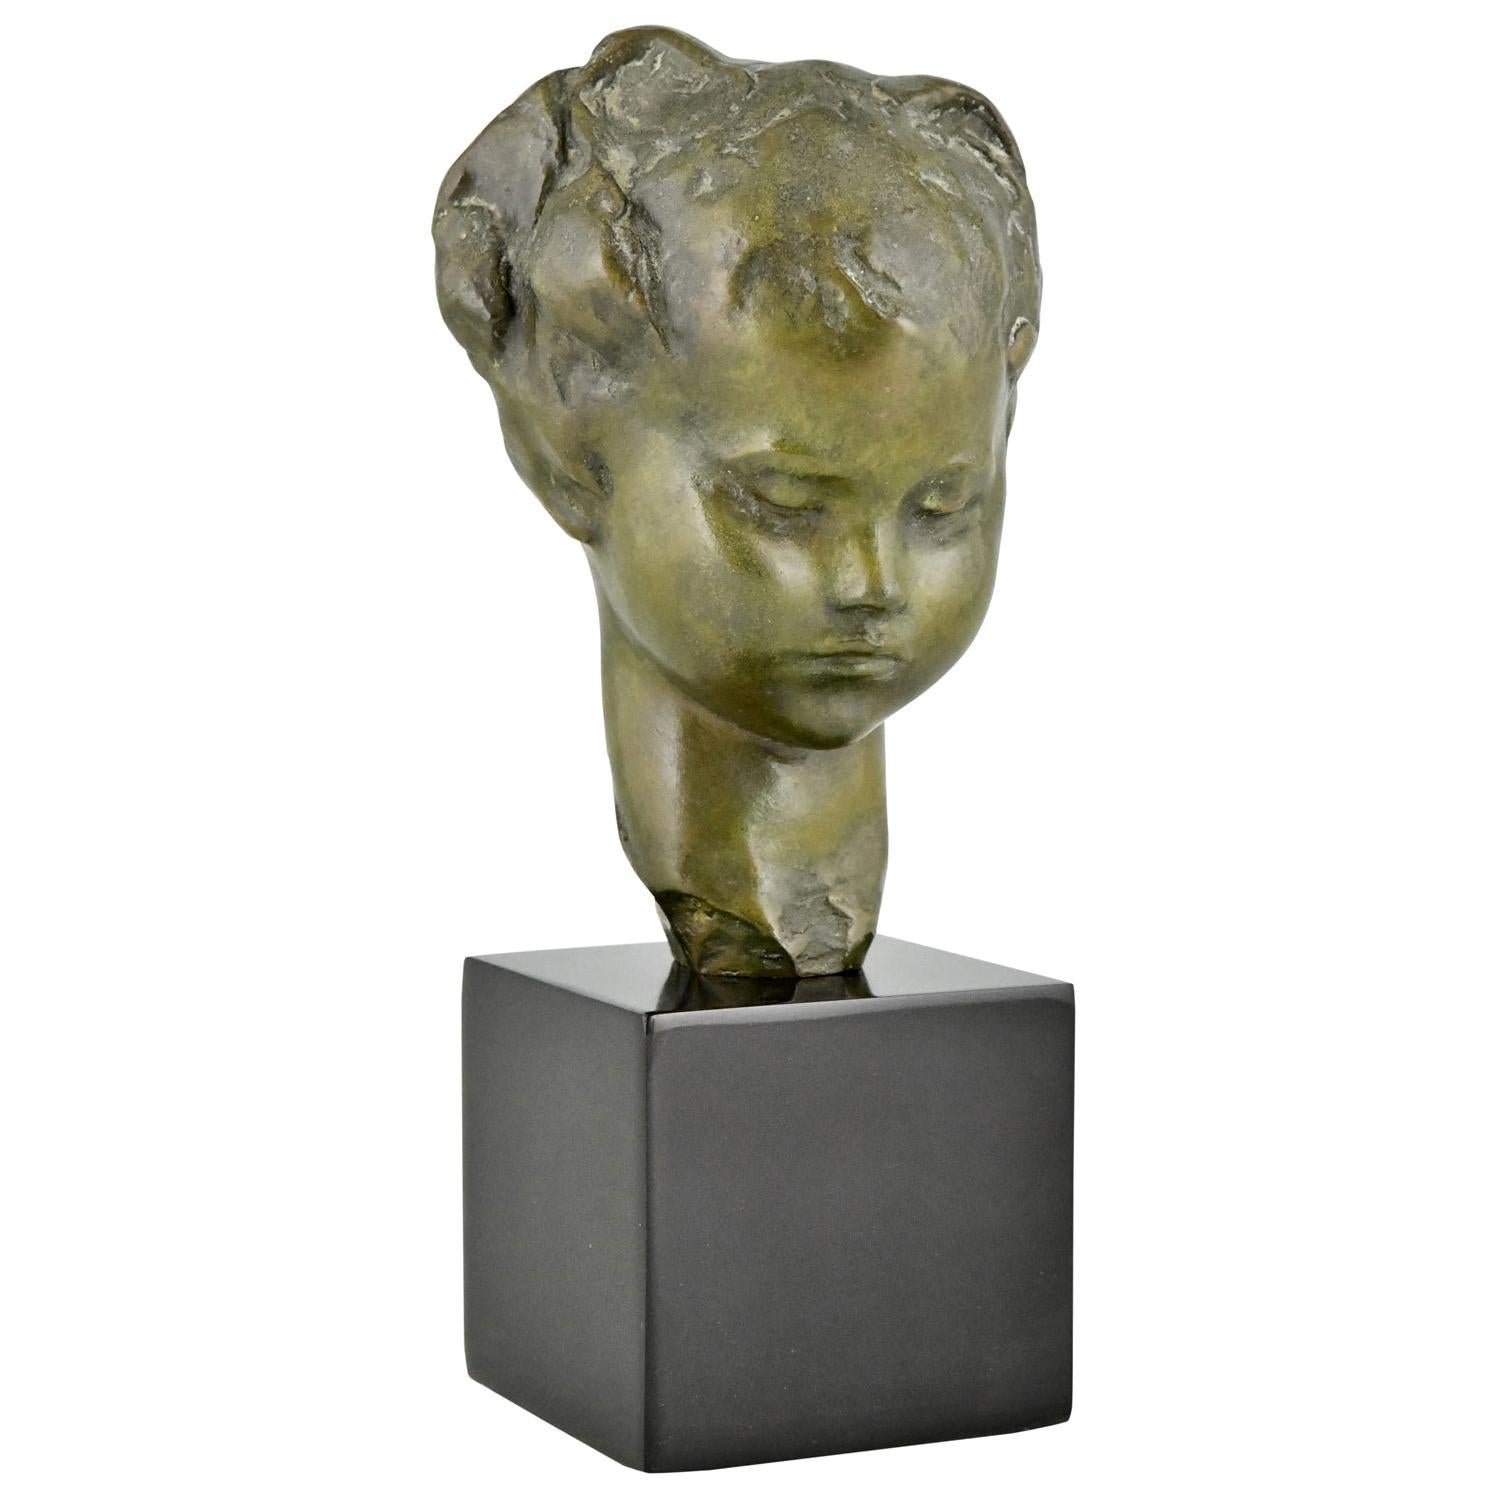 Art Deco Bronze Sculpture Bust of a Girl Amadeo Gennarelli, 1920